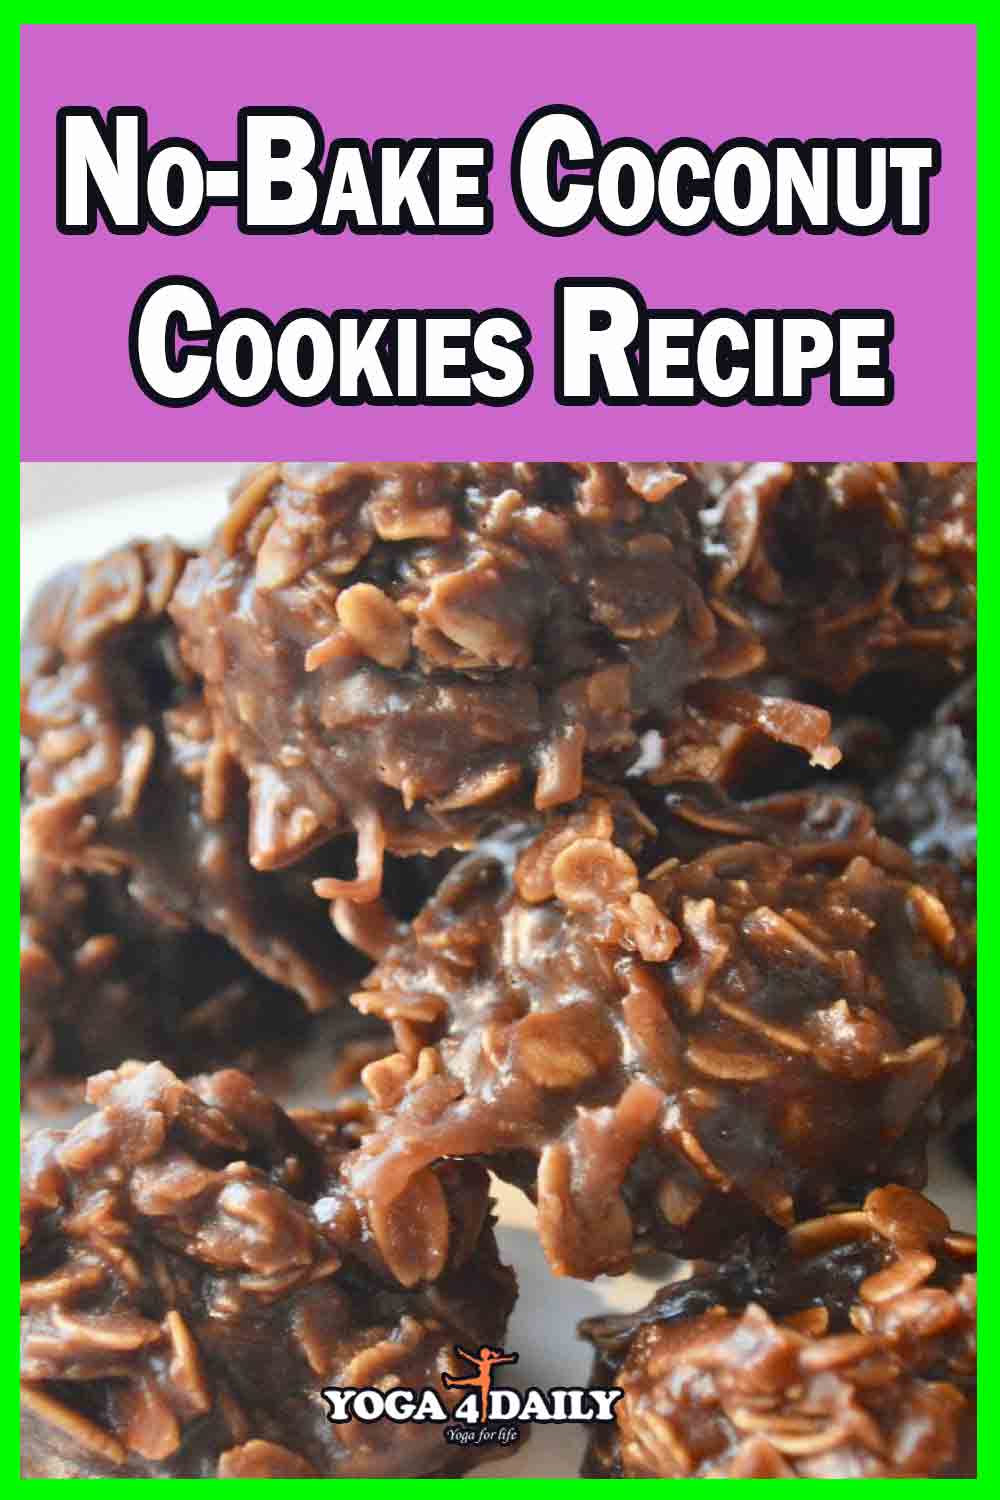 No-Bake Coconut Cookies Recipe